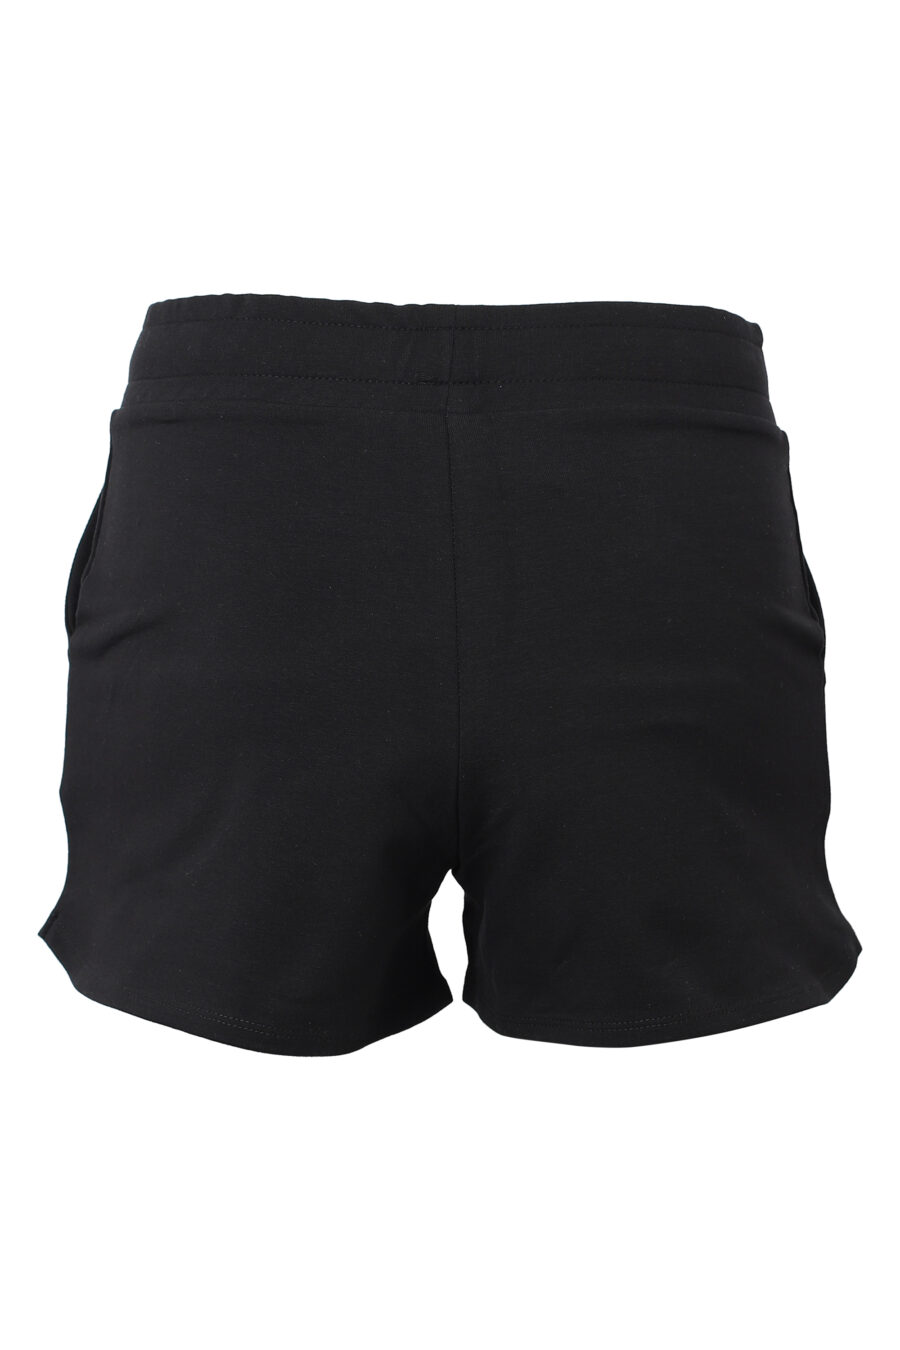 Pantalón negro corto con logo en strass - IMG 9848